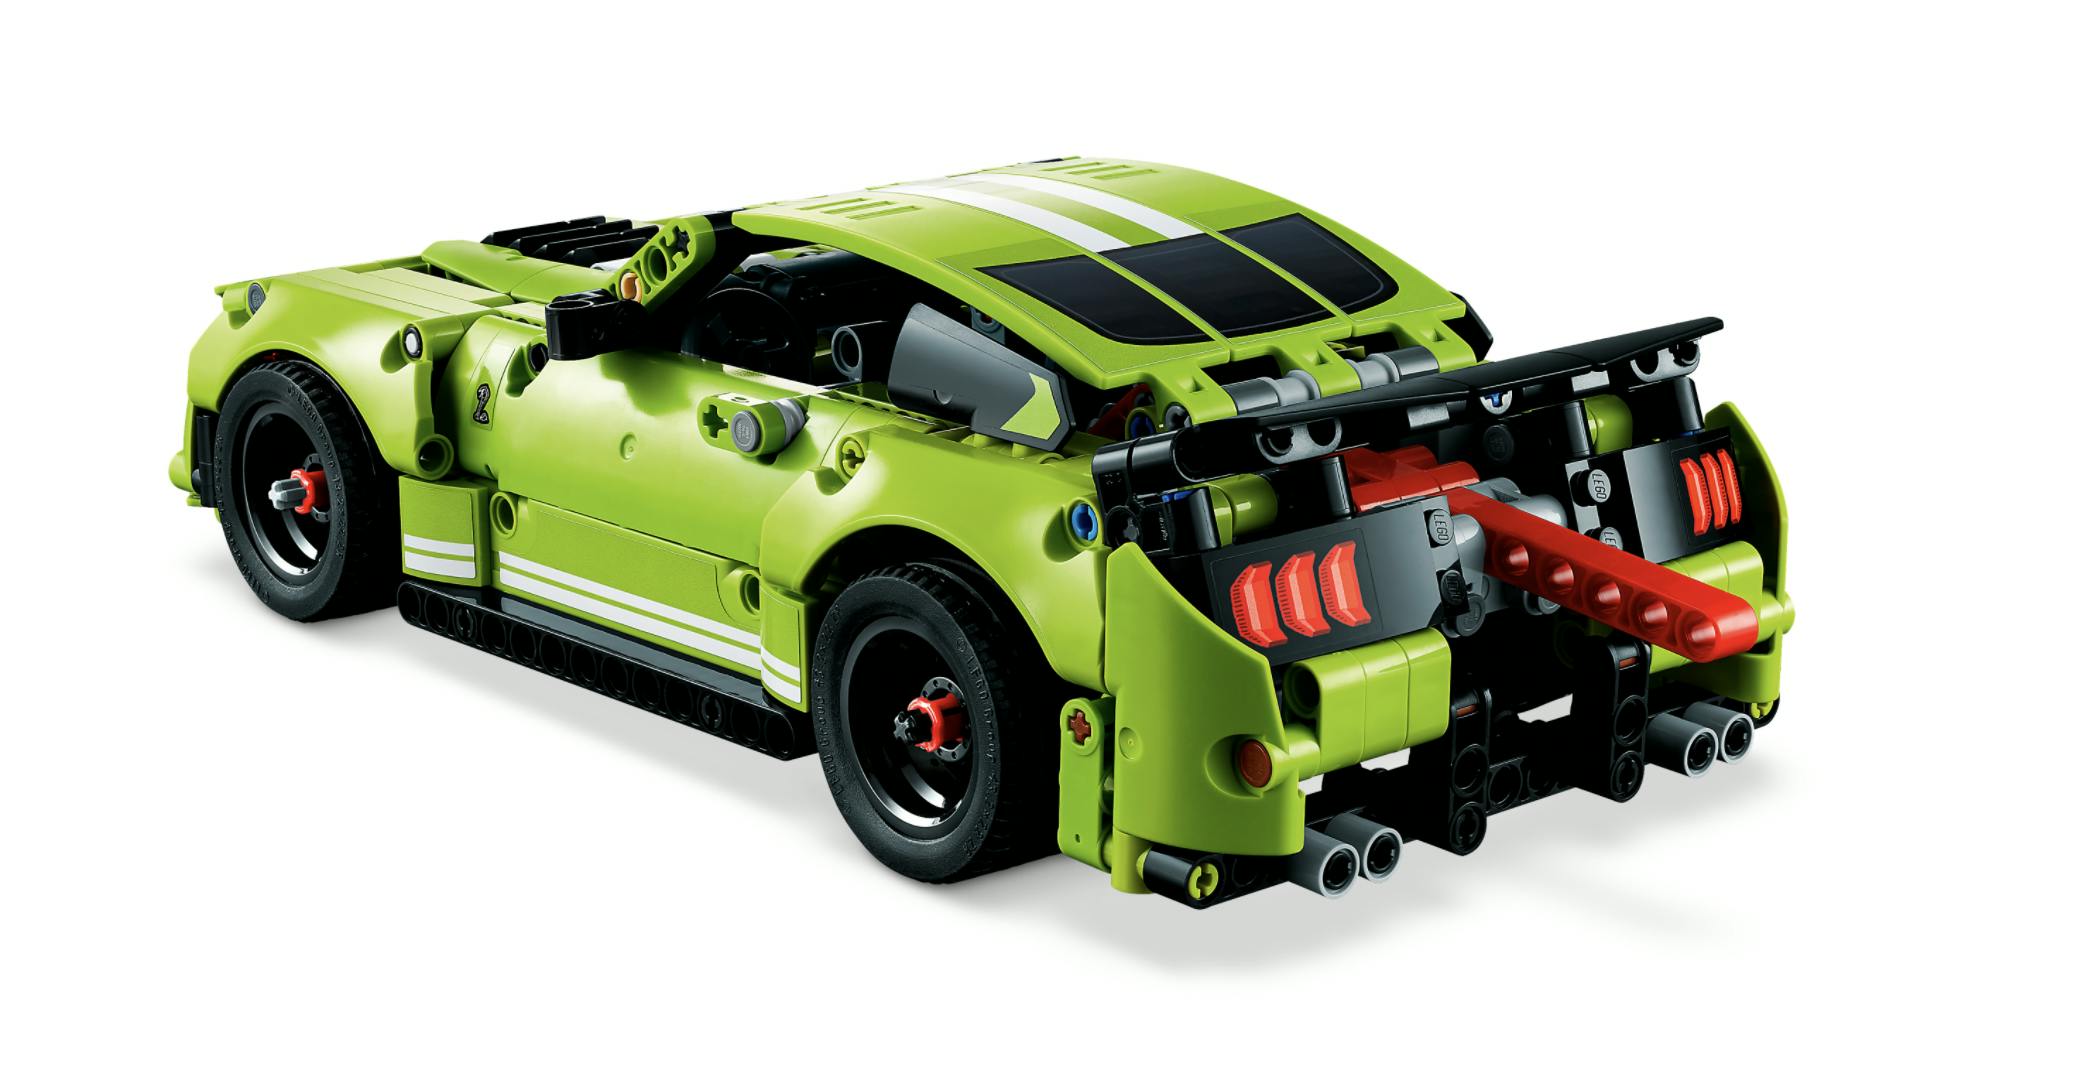 LEGO GT500 Mustang rear three quarter